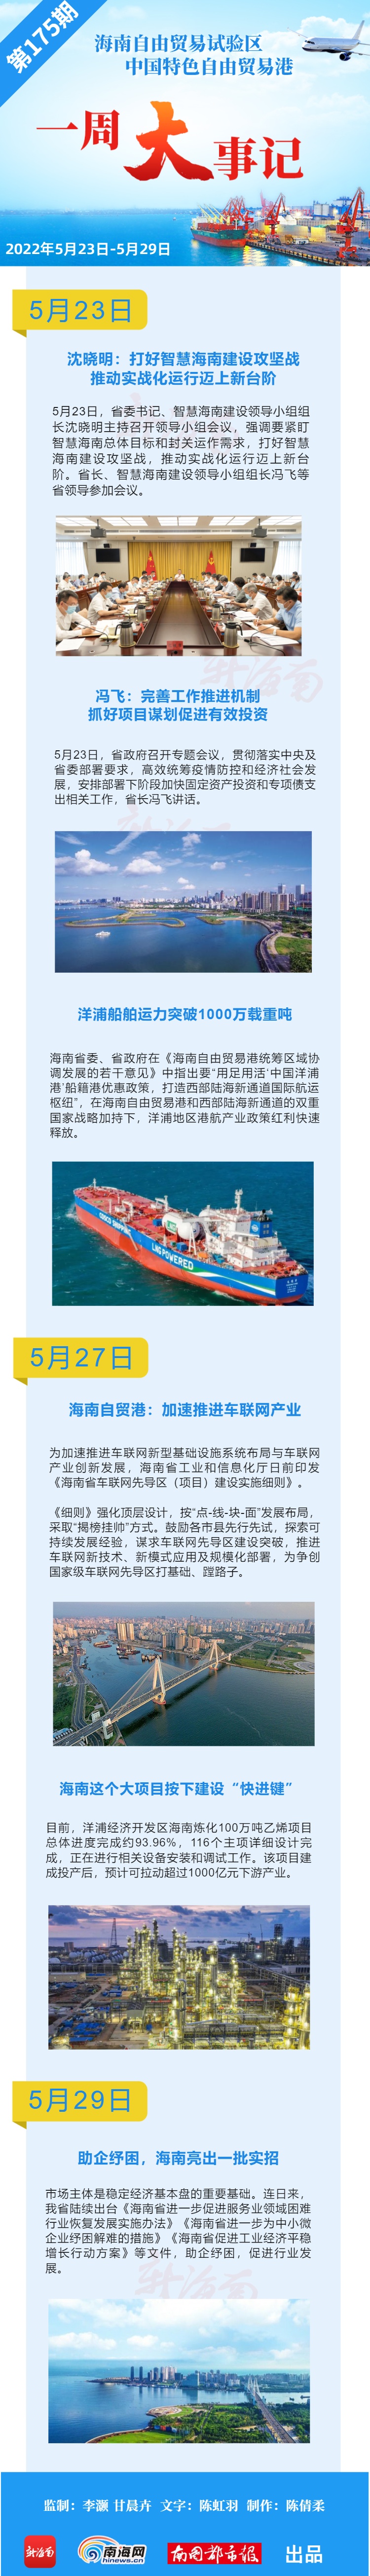 海南自贸港一周大事记｜洋浦船舶运力突破1000万载重吨